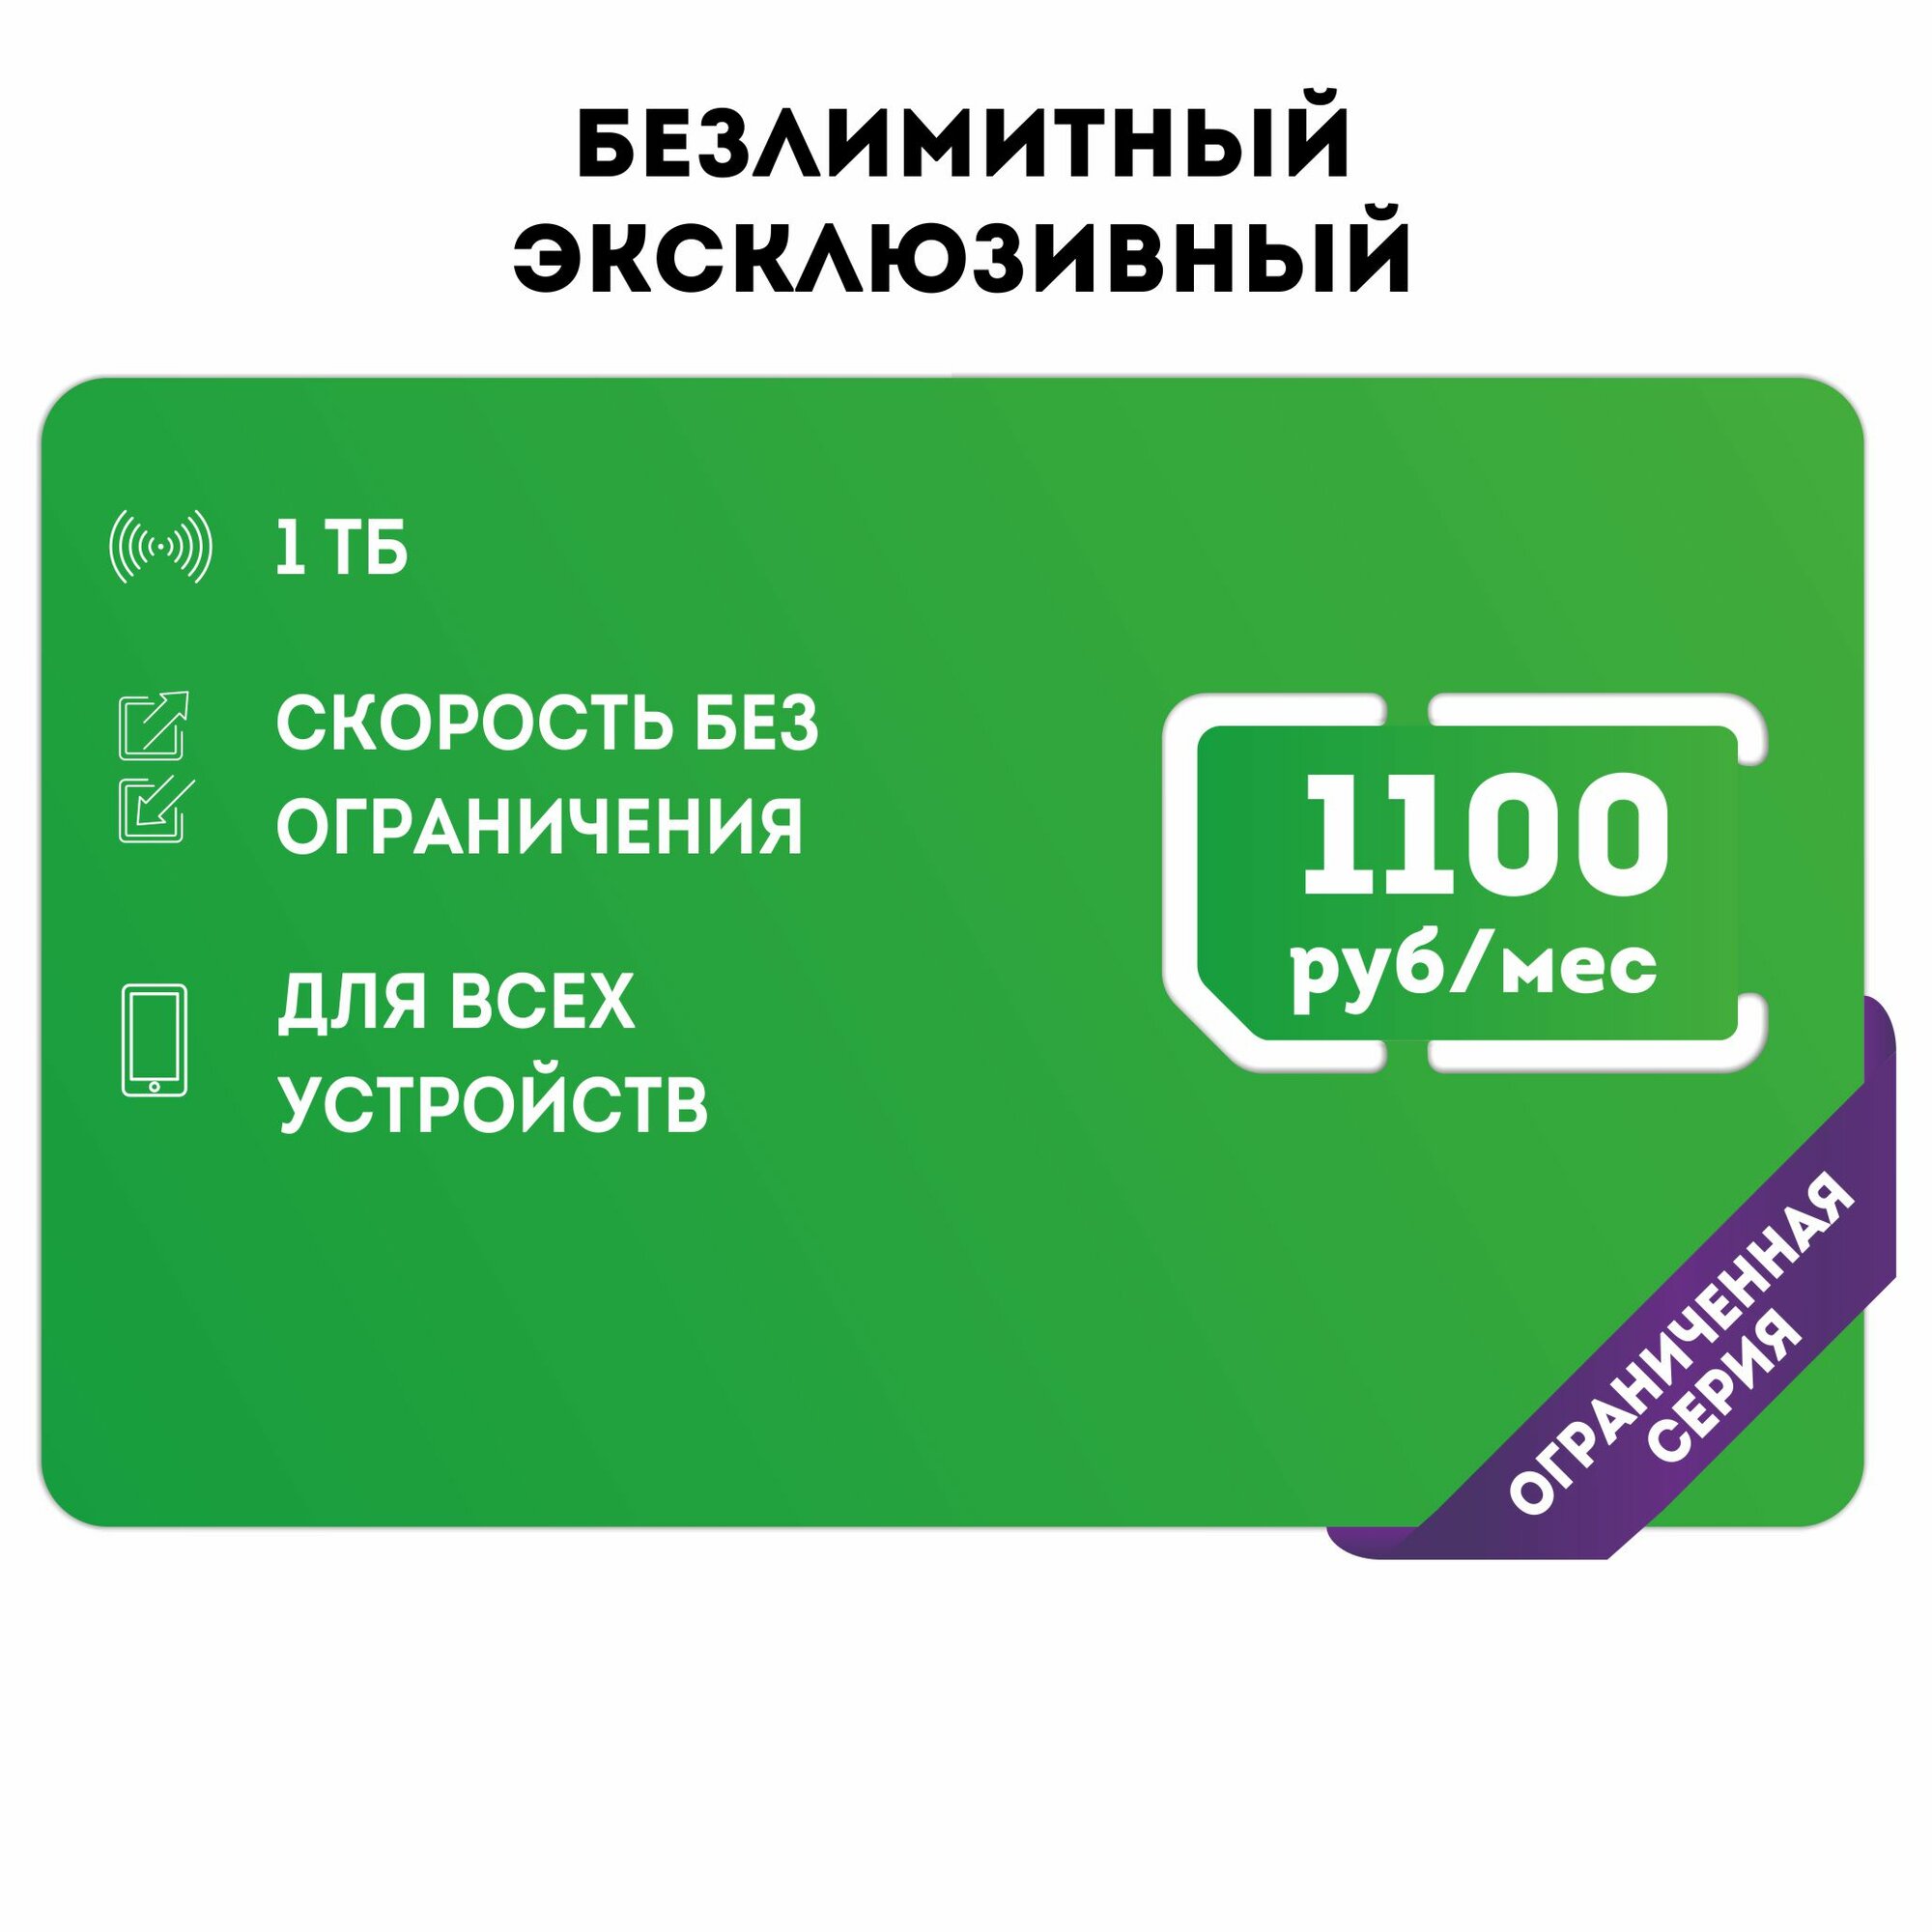 Сим-карта SIM-карта Безлимитный интернет в сетях 3G и 4G за 1100р/мес, интернет для всех устройств, бесплатная раздача (Вся Россия)